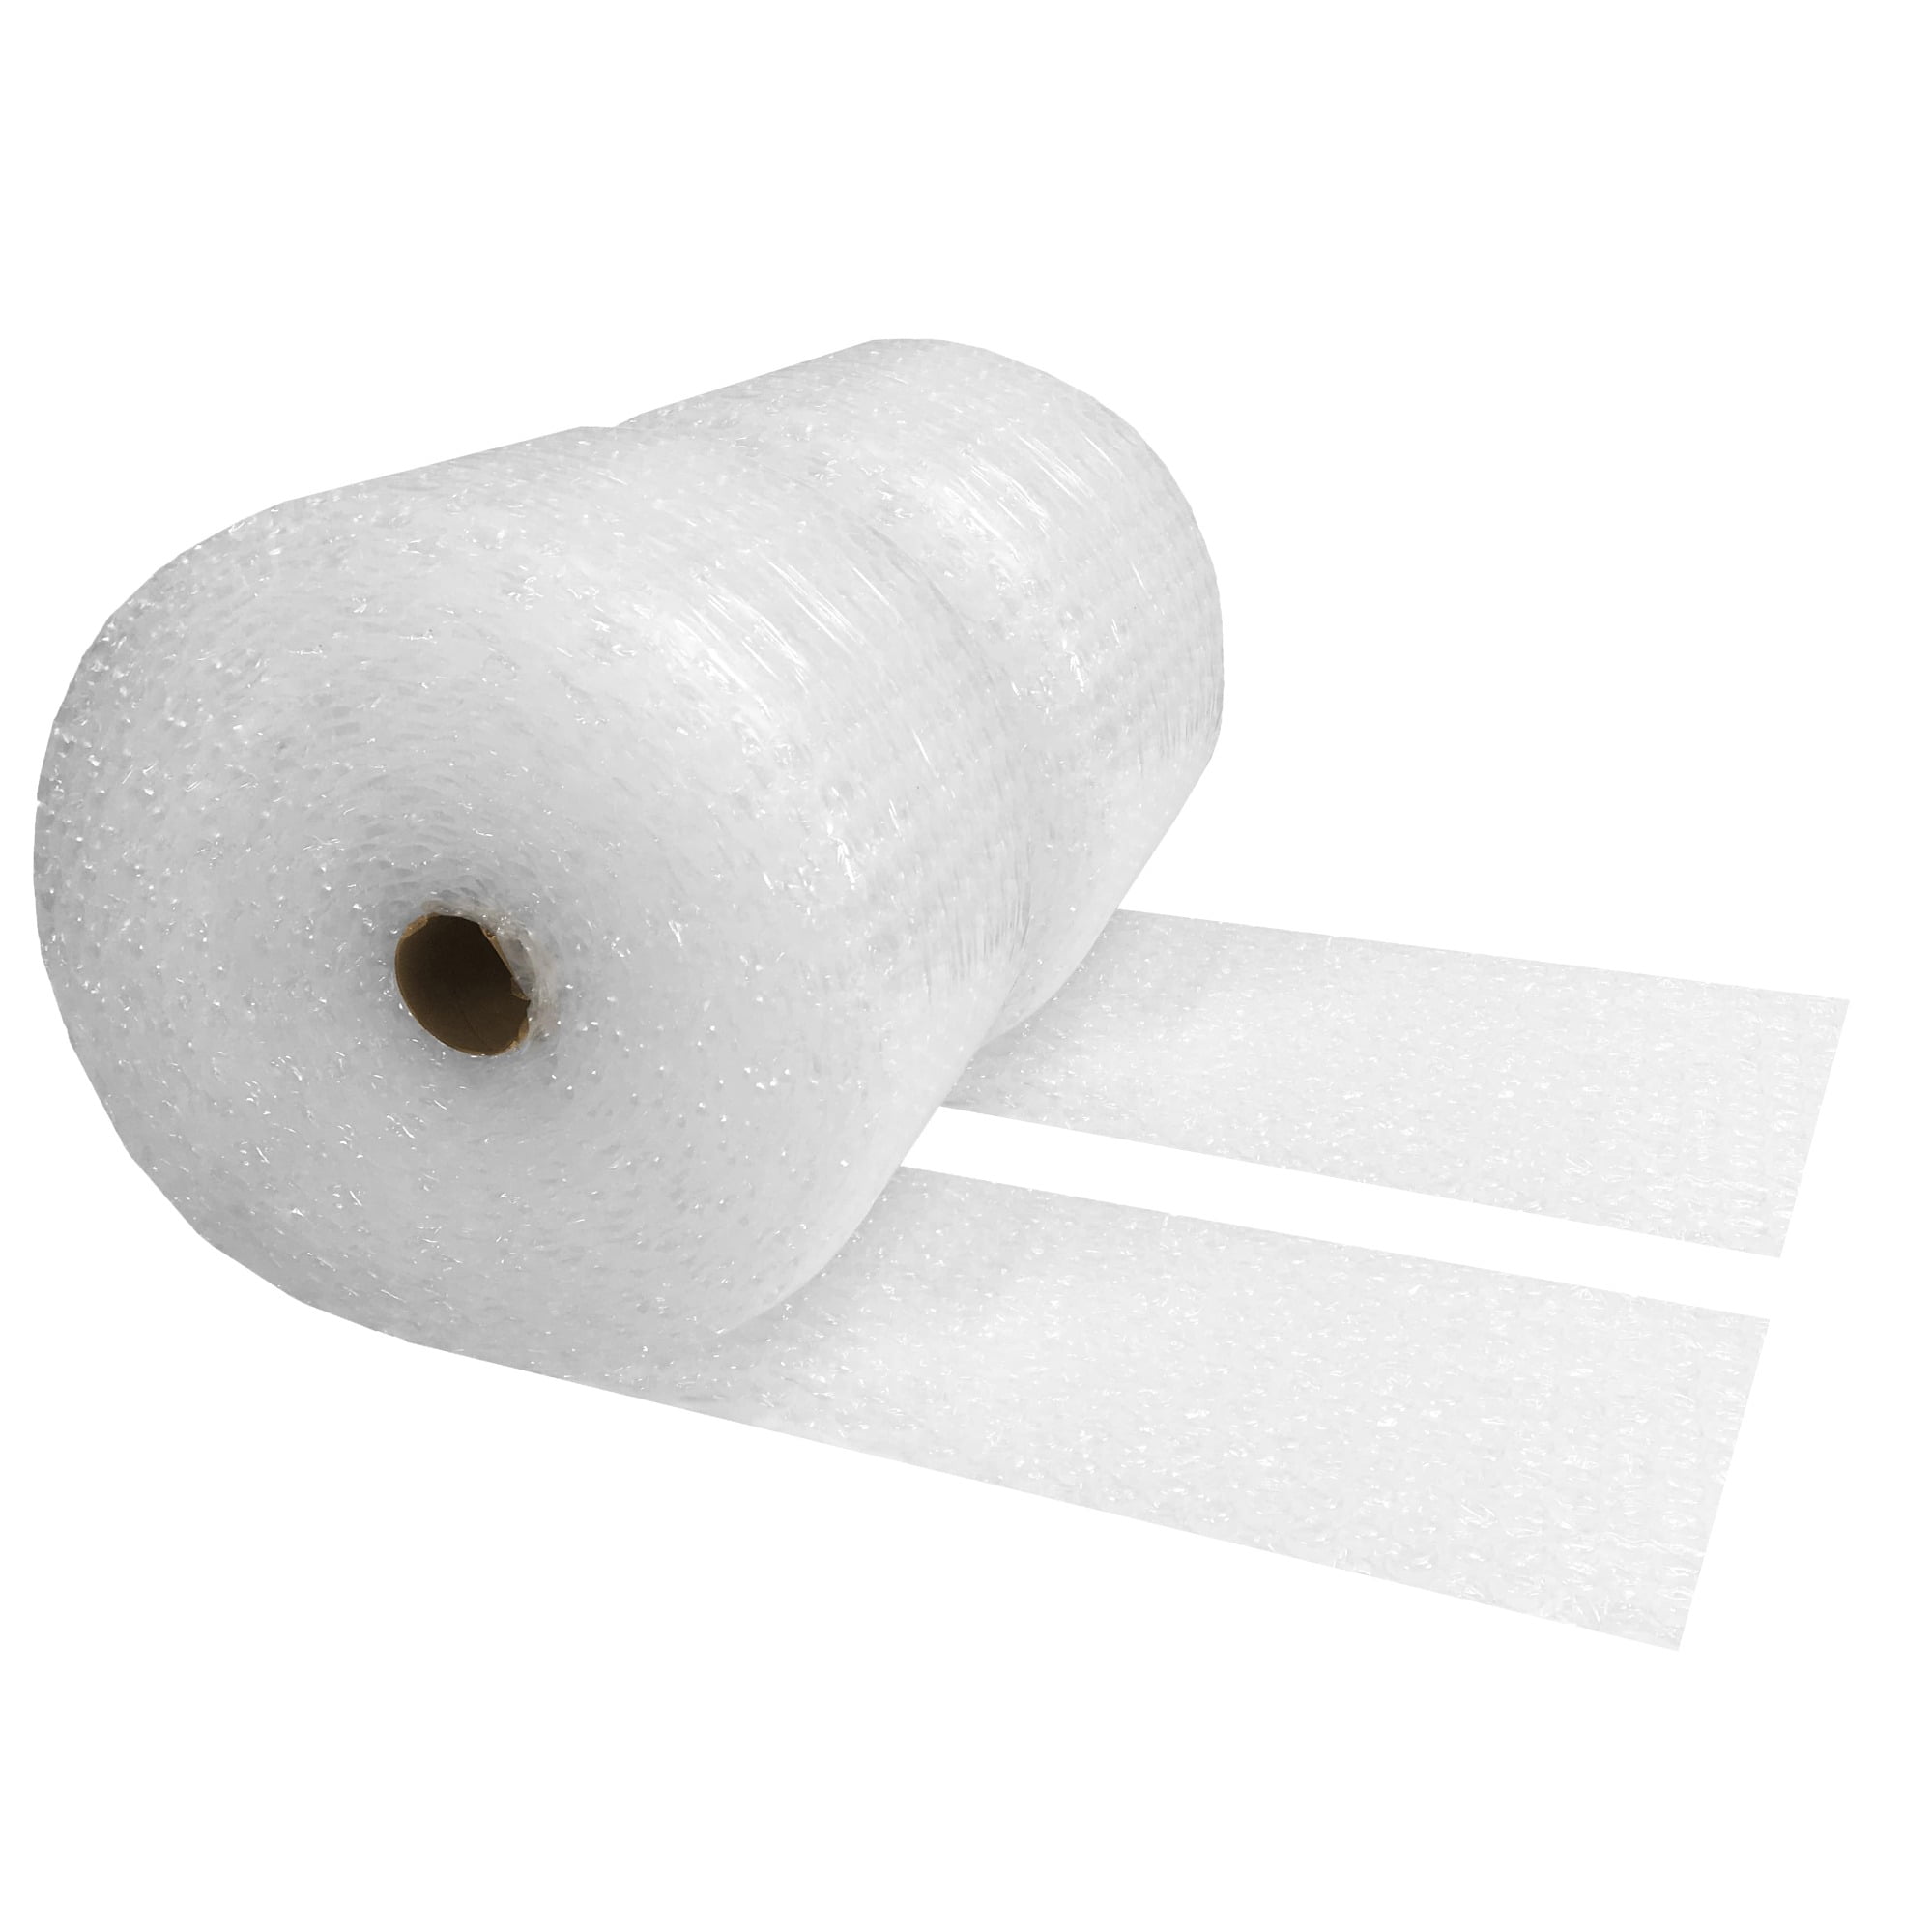 uBoxes Foam Wrap Roll 12